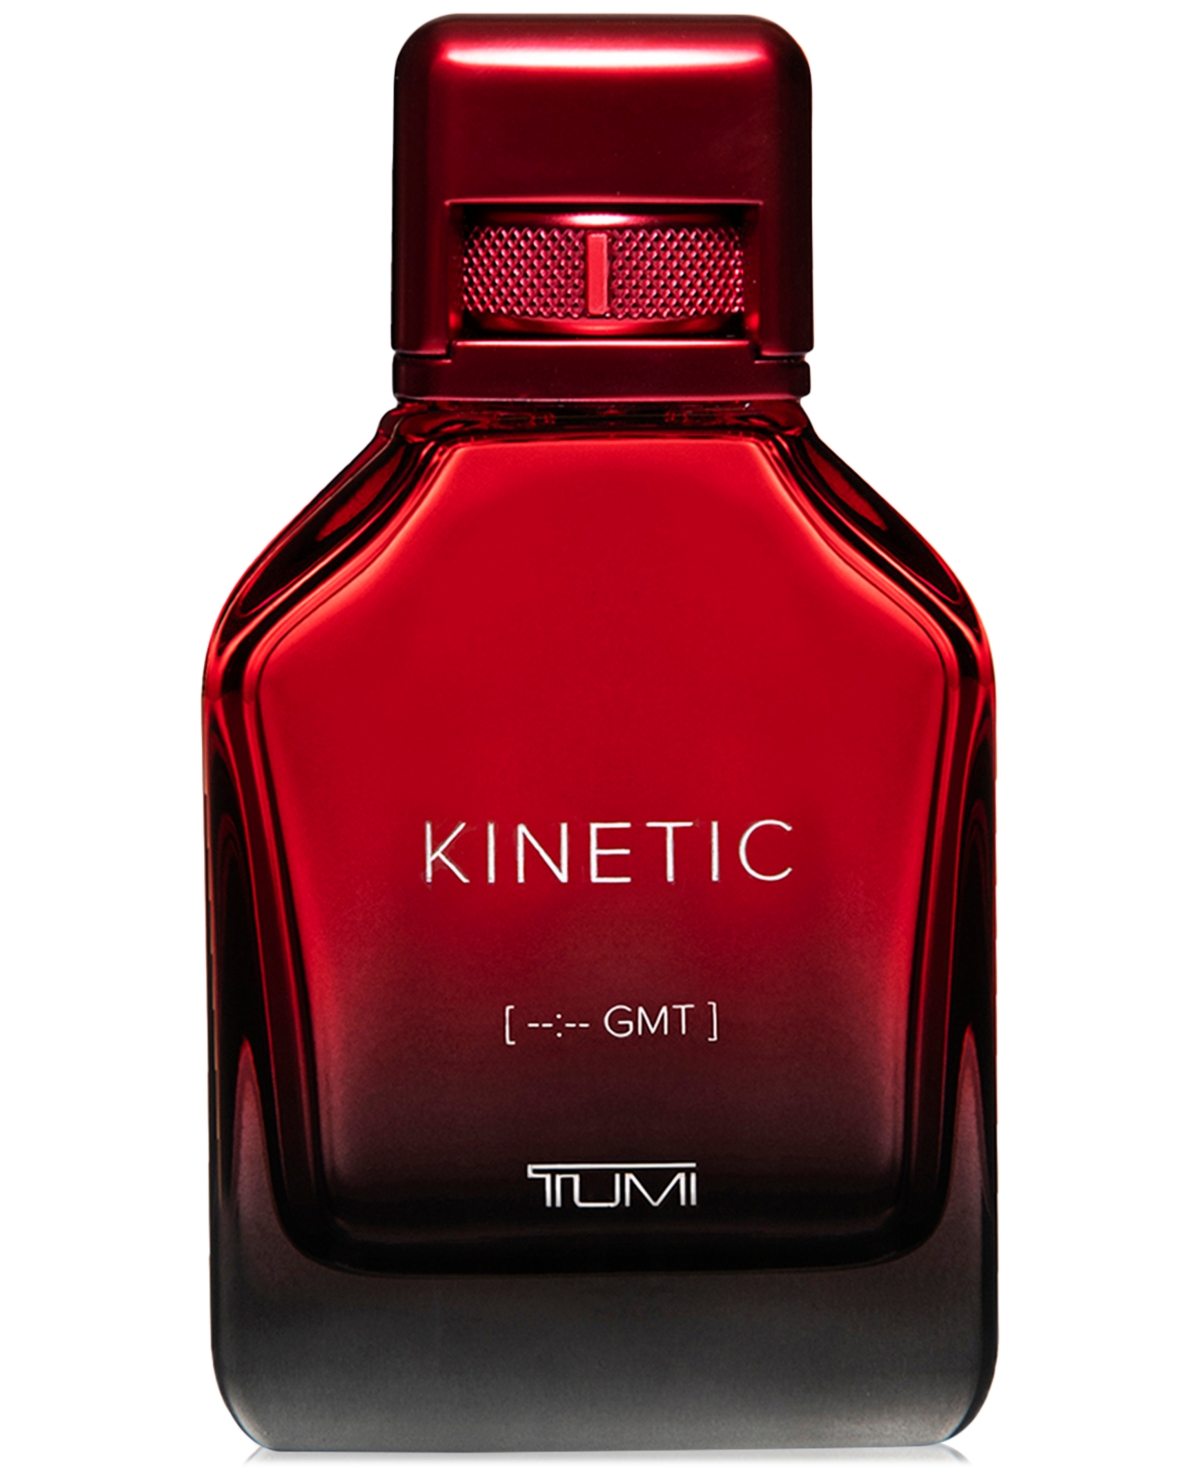 Men's Kinetic [--:-- Gmt] Eau de Parfum Spray, 6.7 oz.